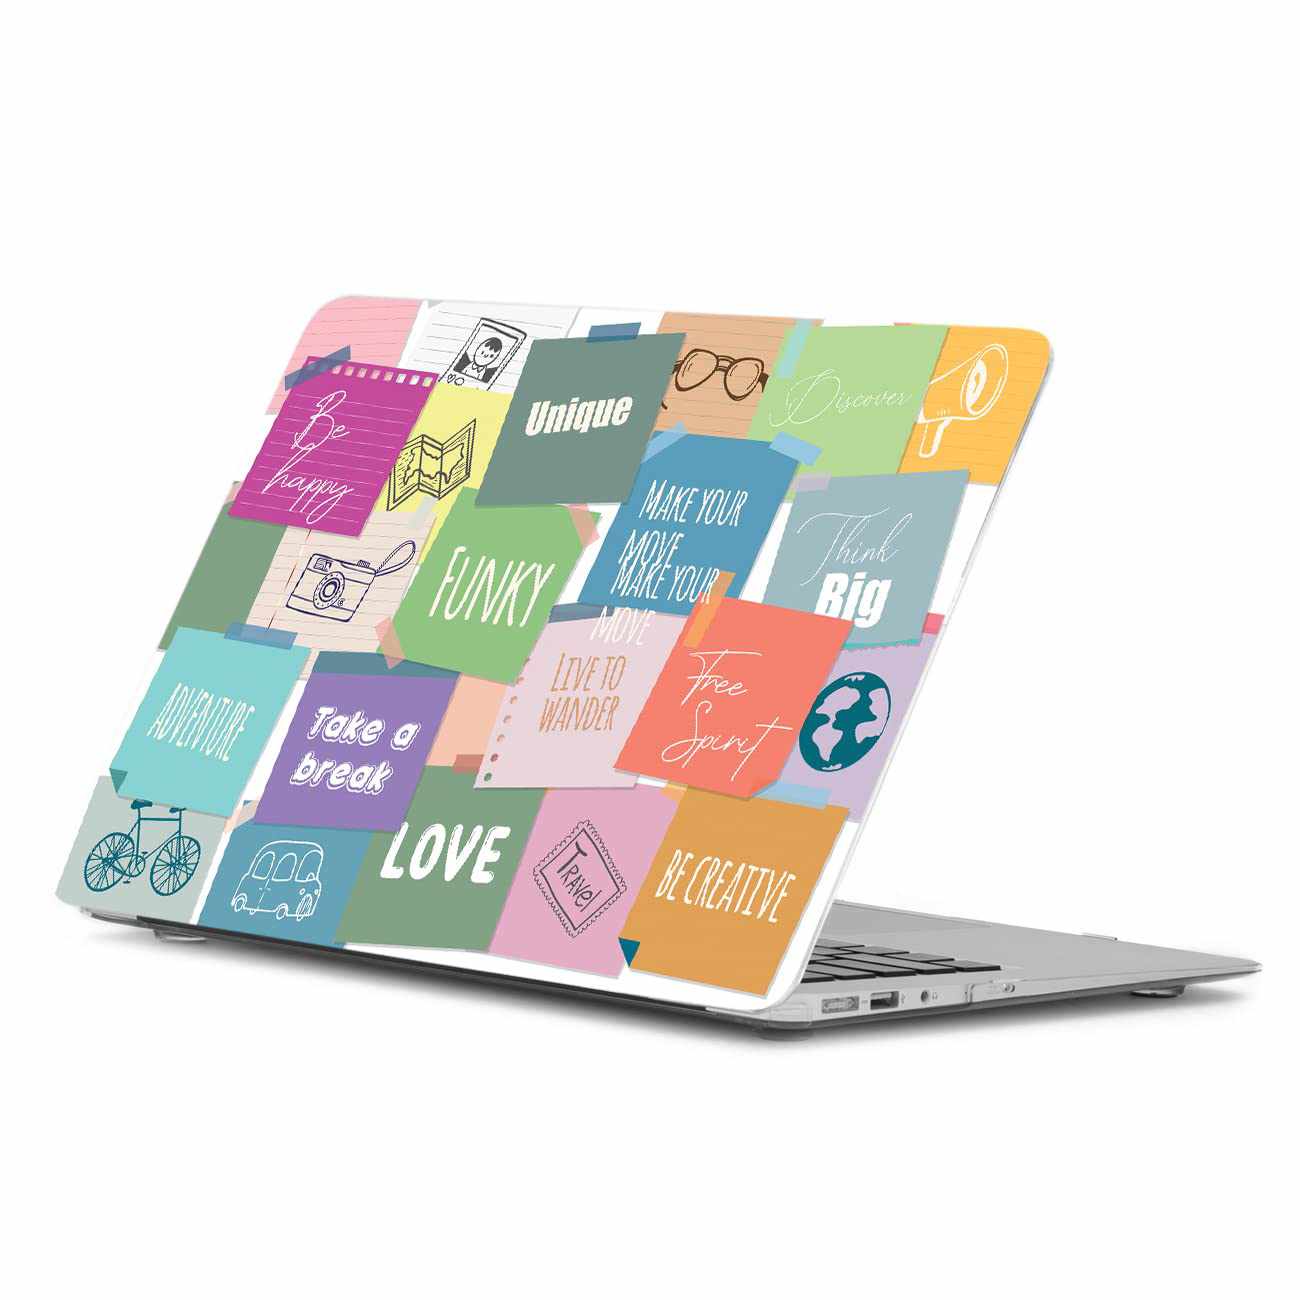 https://kotart.in/cdn/shop/products/Kotart-Kotart-Motivational-Doodle-Design-Laptop-Skins-for-All-Laptops-Upto-15_6-inch-Doodle-Style-HD-Vinyl-Printed-Laptop-Stickers-for-Acer-Lenovo-Dell-Apple-Asus-and-All-Laptops-Styl_1f19dd1f-67fe-41d5-8cd6-ab8b7046e516.jpg?v=1697545622&width=1445